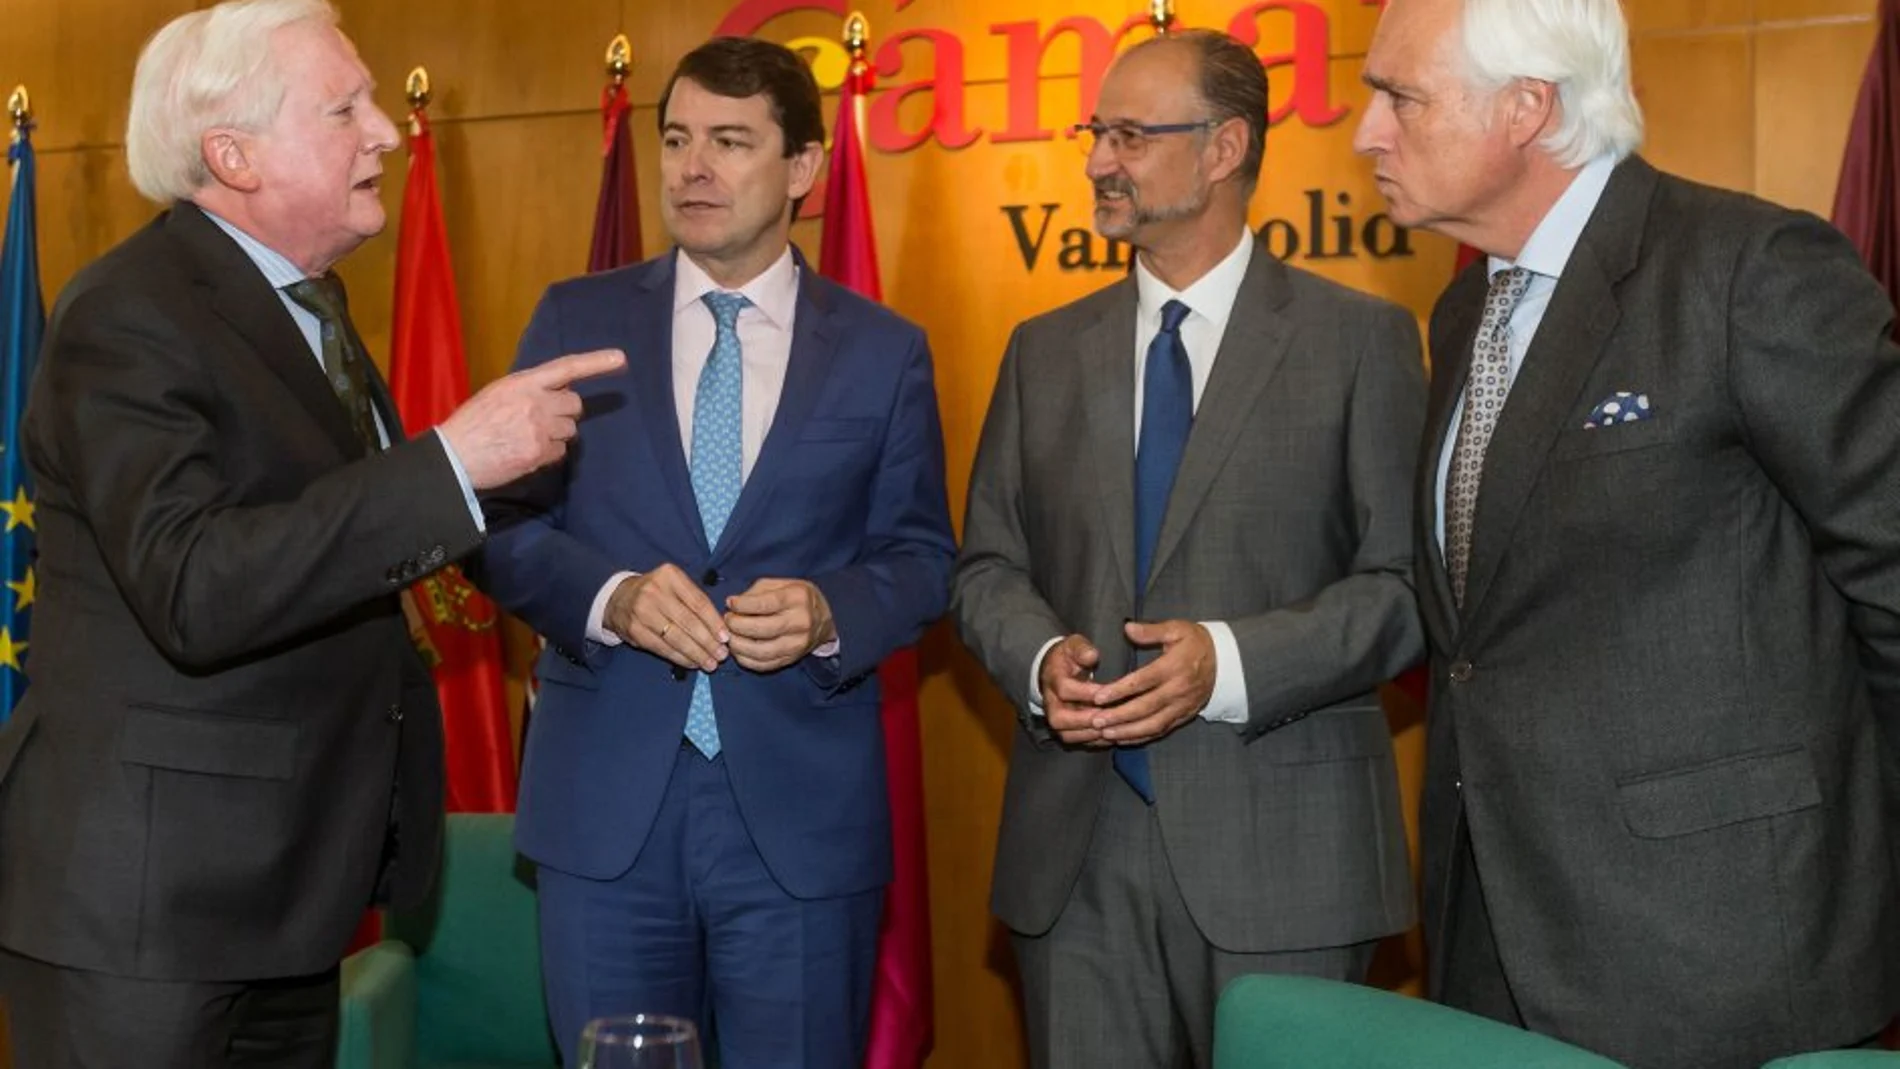 El presidente del Consejo de Cámaras de Castilla y León, Antonio Miguel Méndez Pozo, conversa con Alfonso Fernández Mañueco, Luis Fuentes y José Luis Concepción